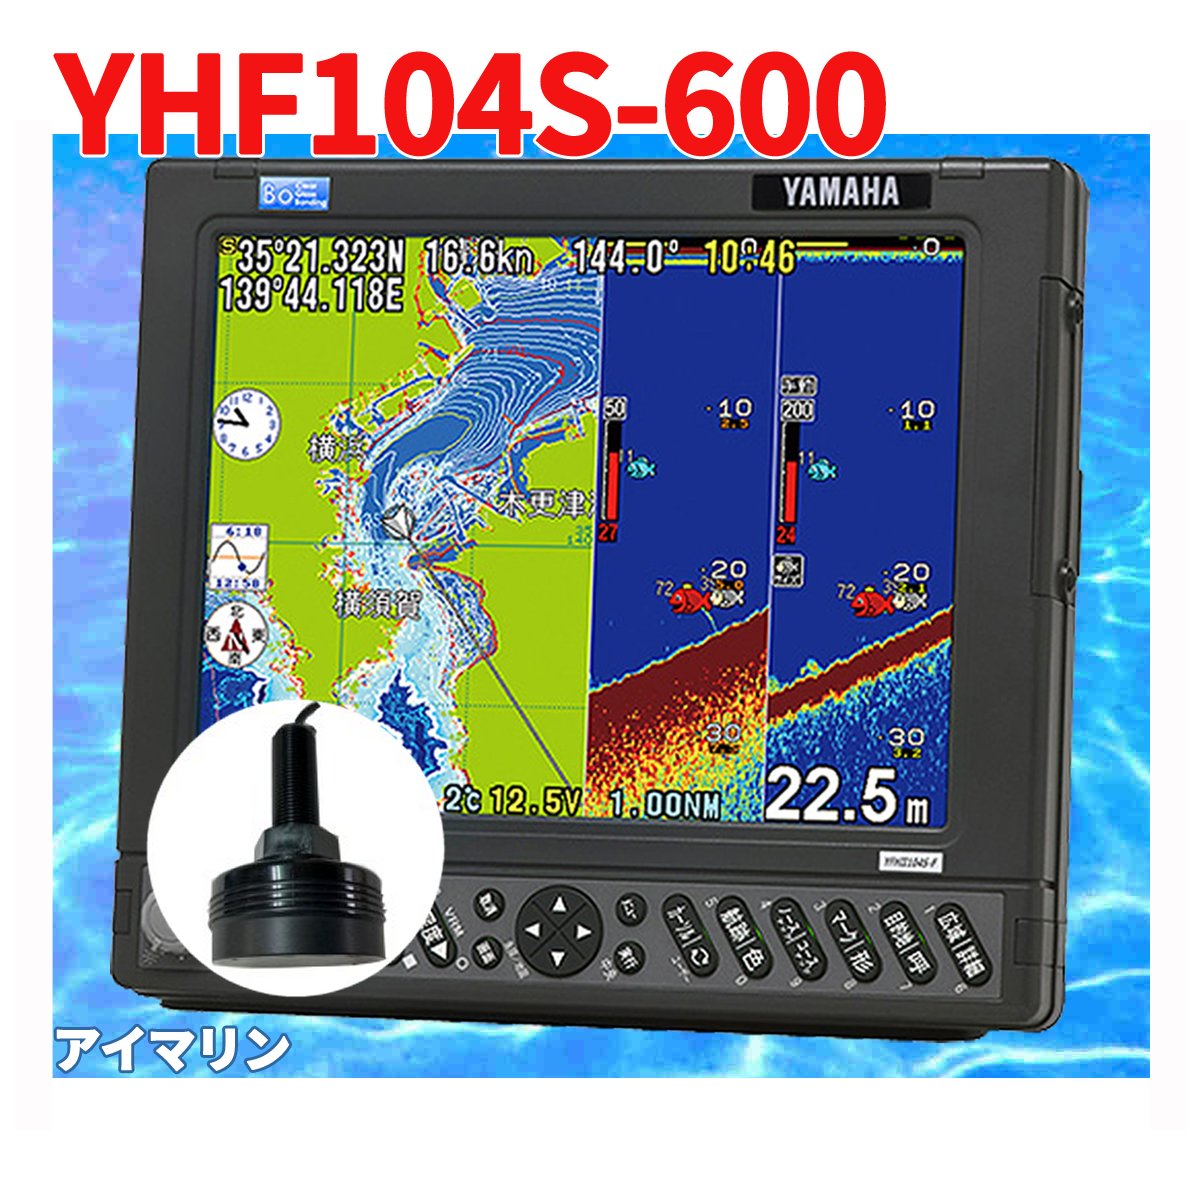 5/18 在庫あり YFHII-104S-F66i 600w TD28g 振動子付き HE-731S の ヤマハブランド YFH2-104 魚探 アンテナ内蔵 HONDEX ホンデックス